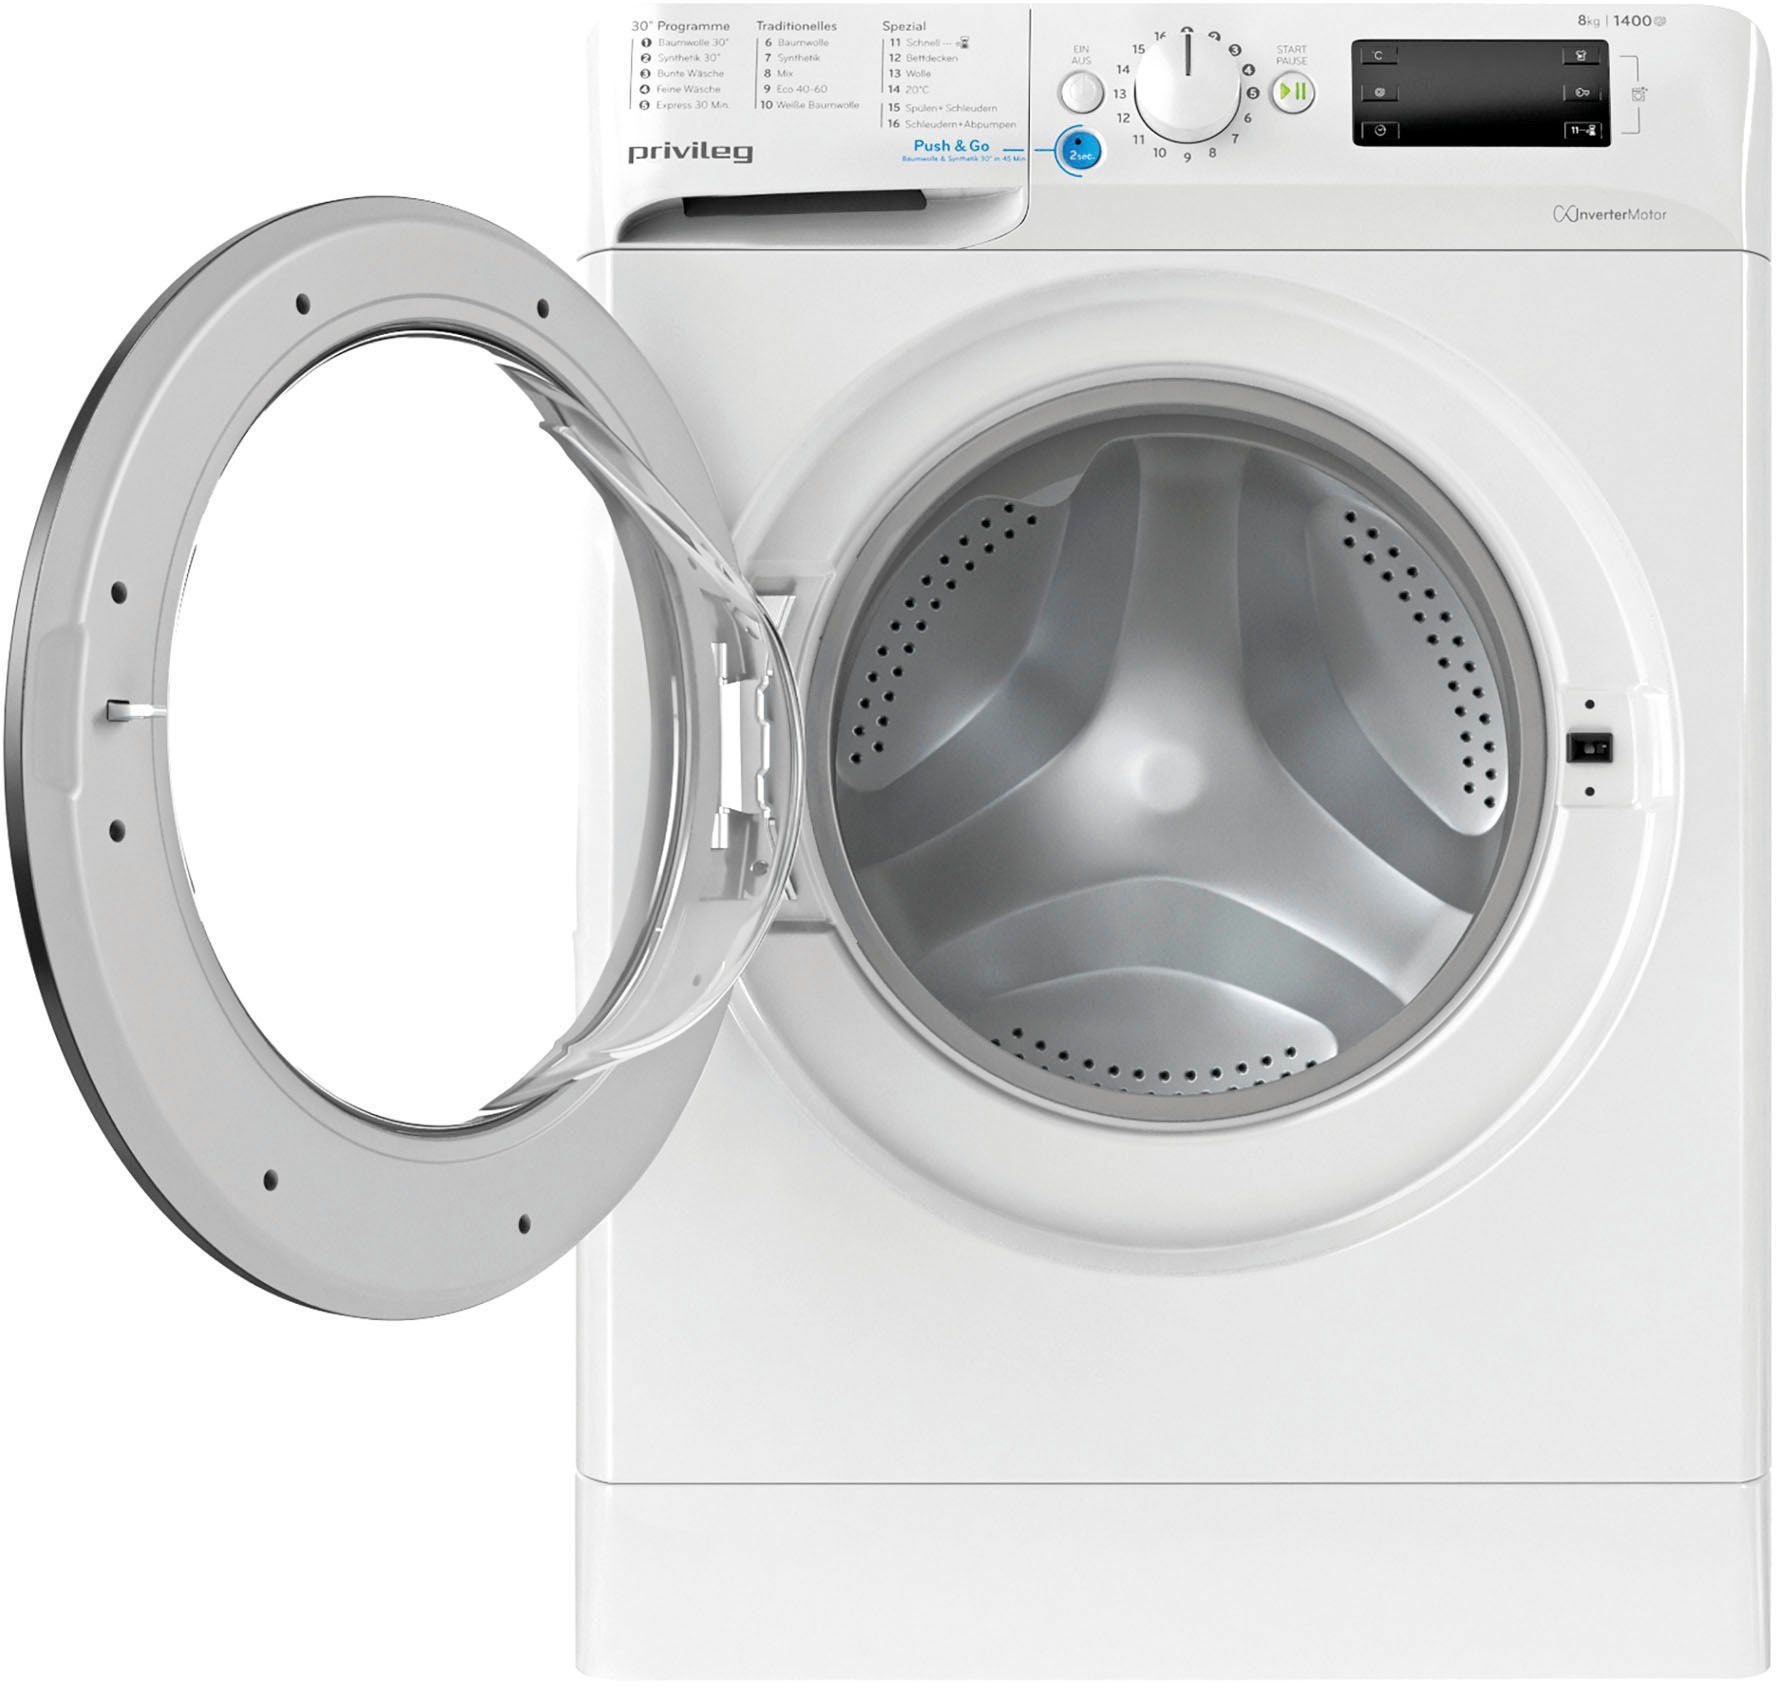 kg, U/min kaufen 873 Waschmaschine, PWF N, online 8 1400 Privileg X